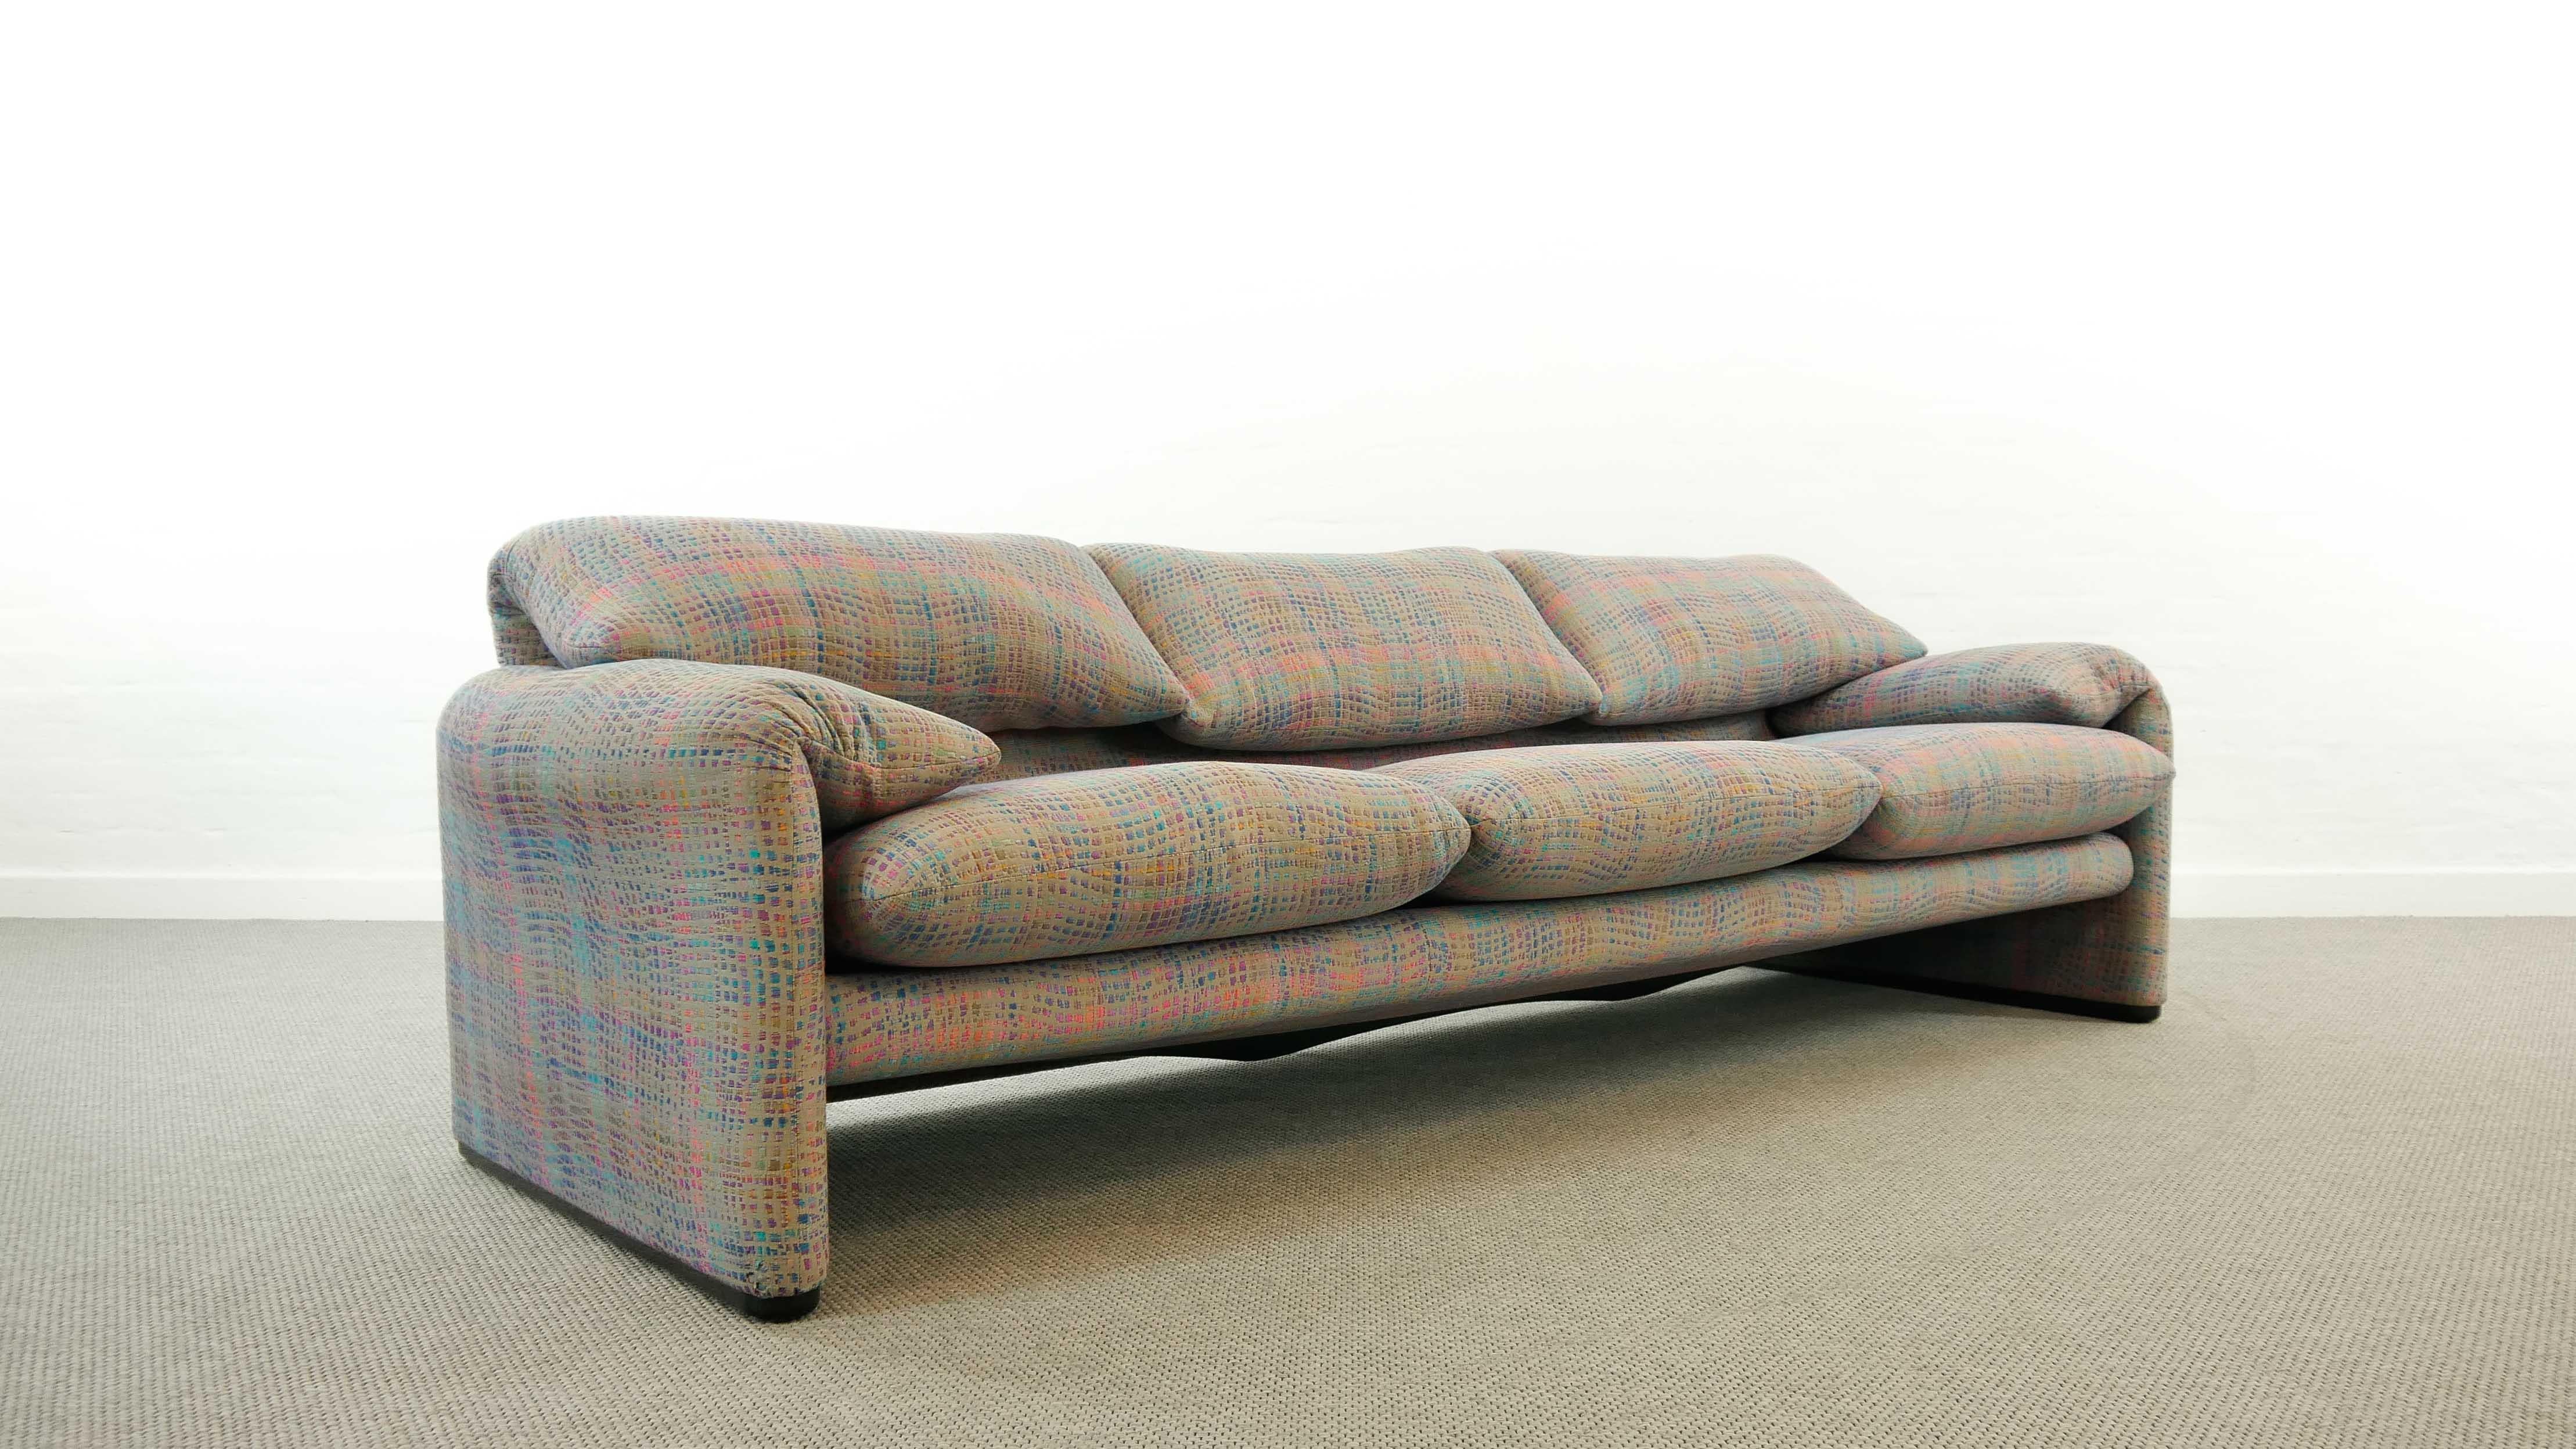 Italian Maralunga 3-Seat Sofa by Vico Magistretti for Cassina in Grey-Multicolore Fabric